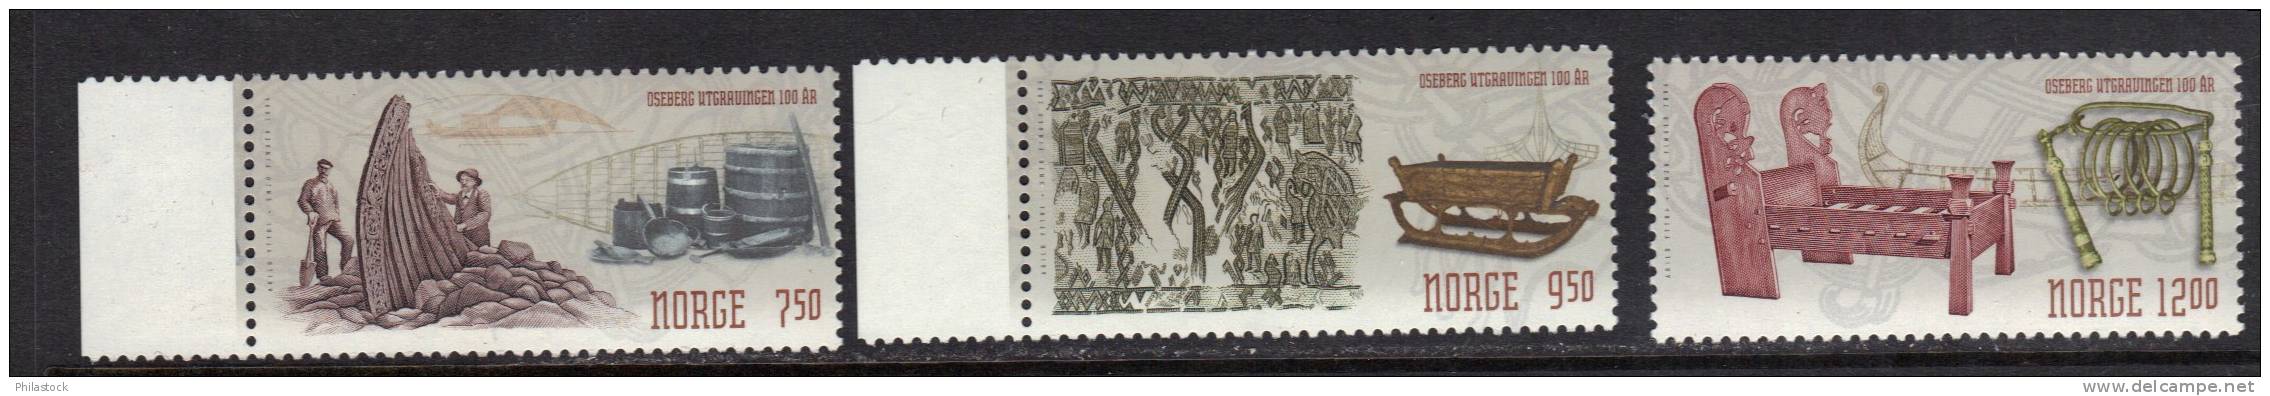 NORVEGE  N° 1456 à 1458 ** - Unused Stamps